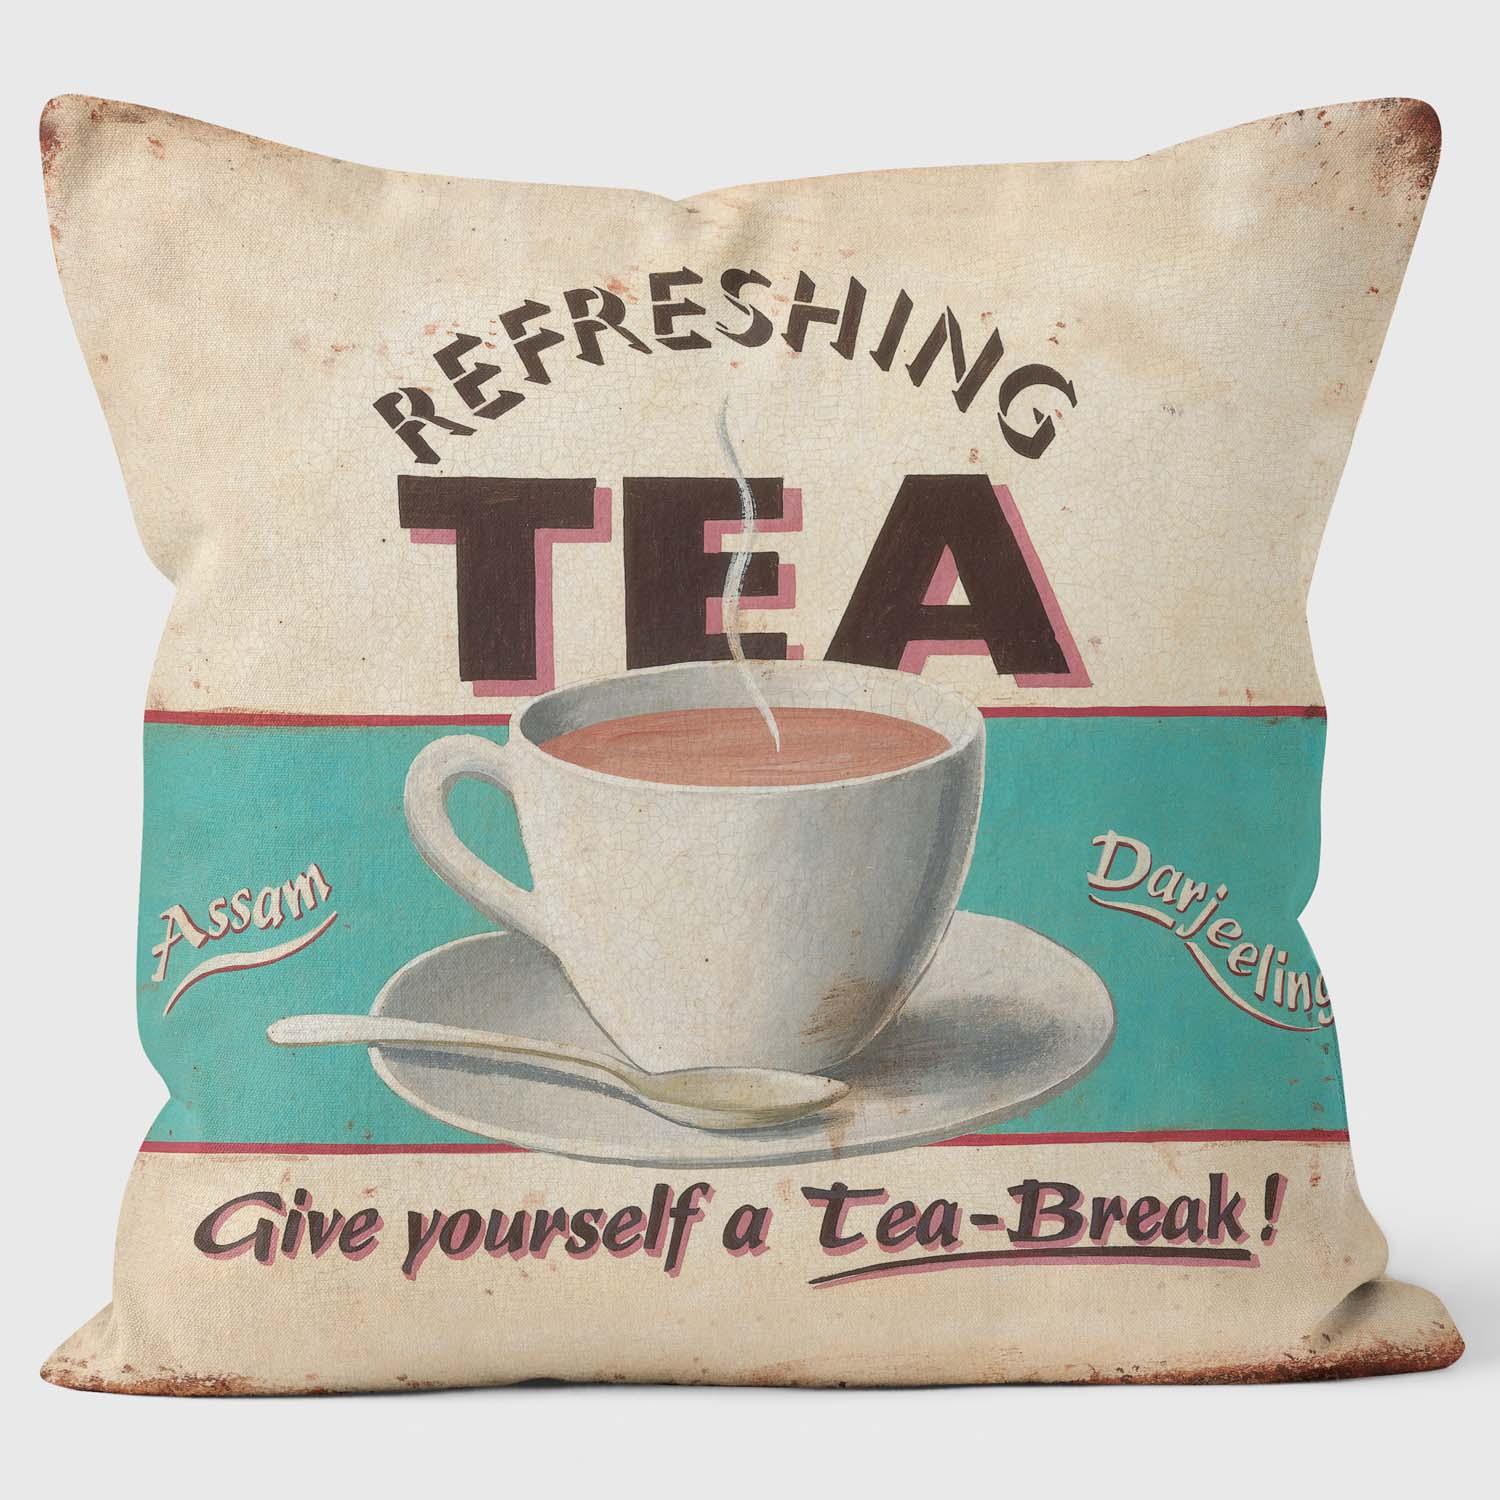 Refreshing Tea - Martin Wiscombe - Retro Print Cushions - Handmade Cushions UK - WeLoveCushions